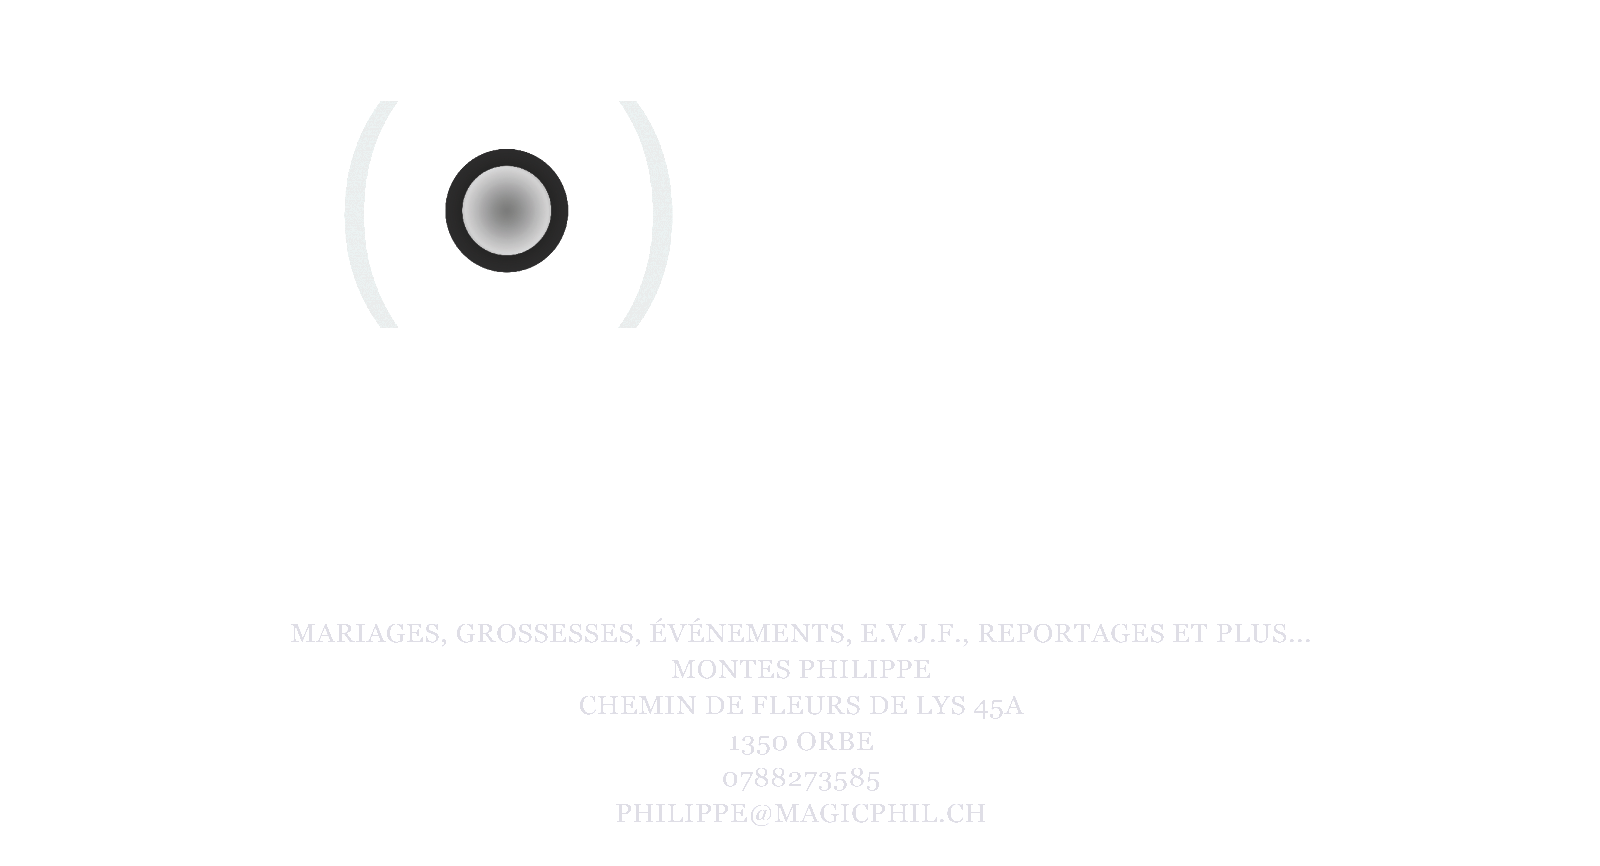 MONTES  PHOTOGRAPHIE